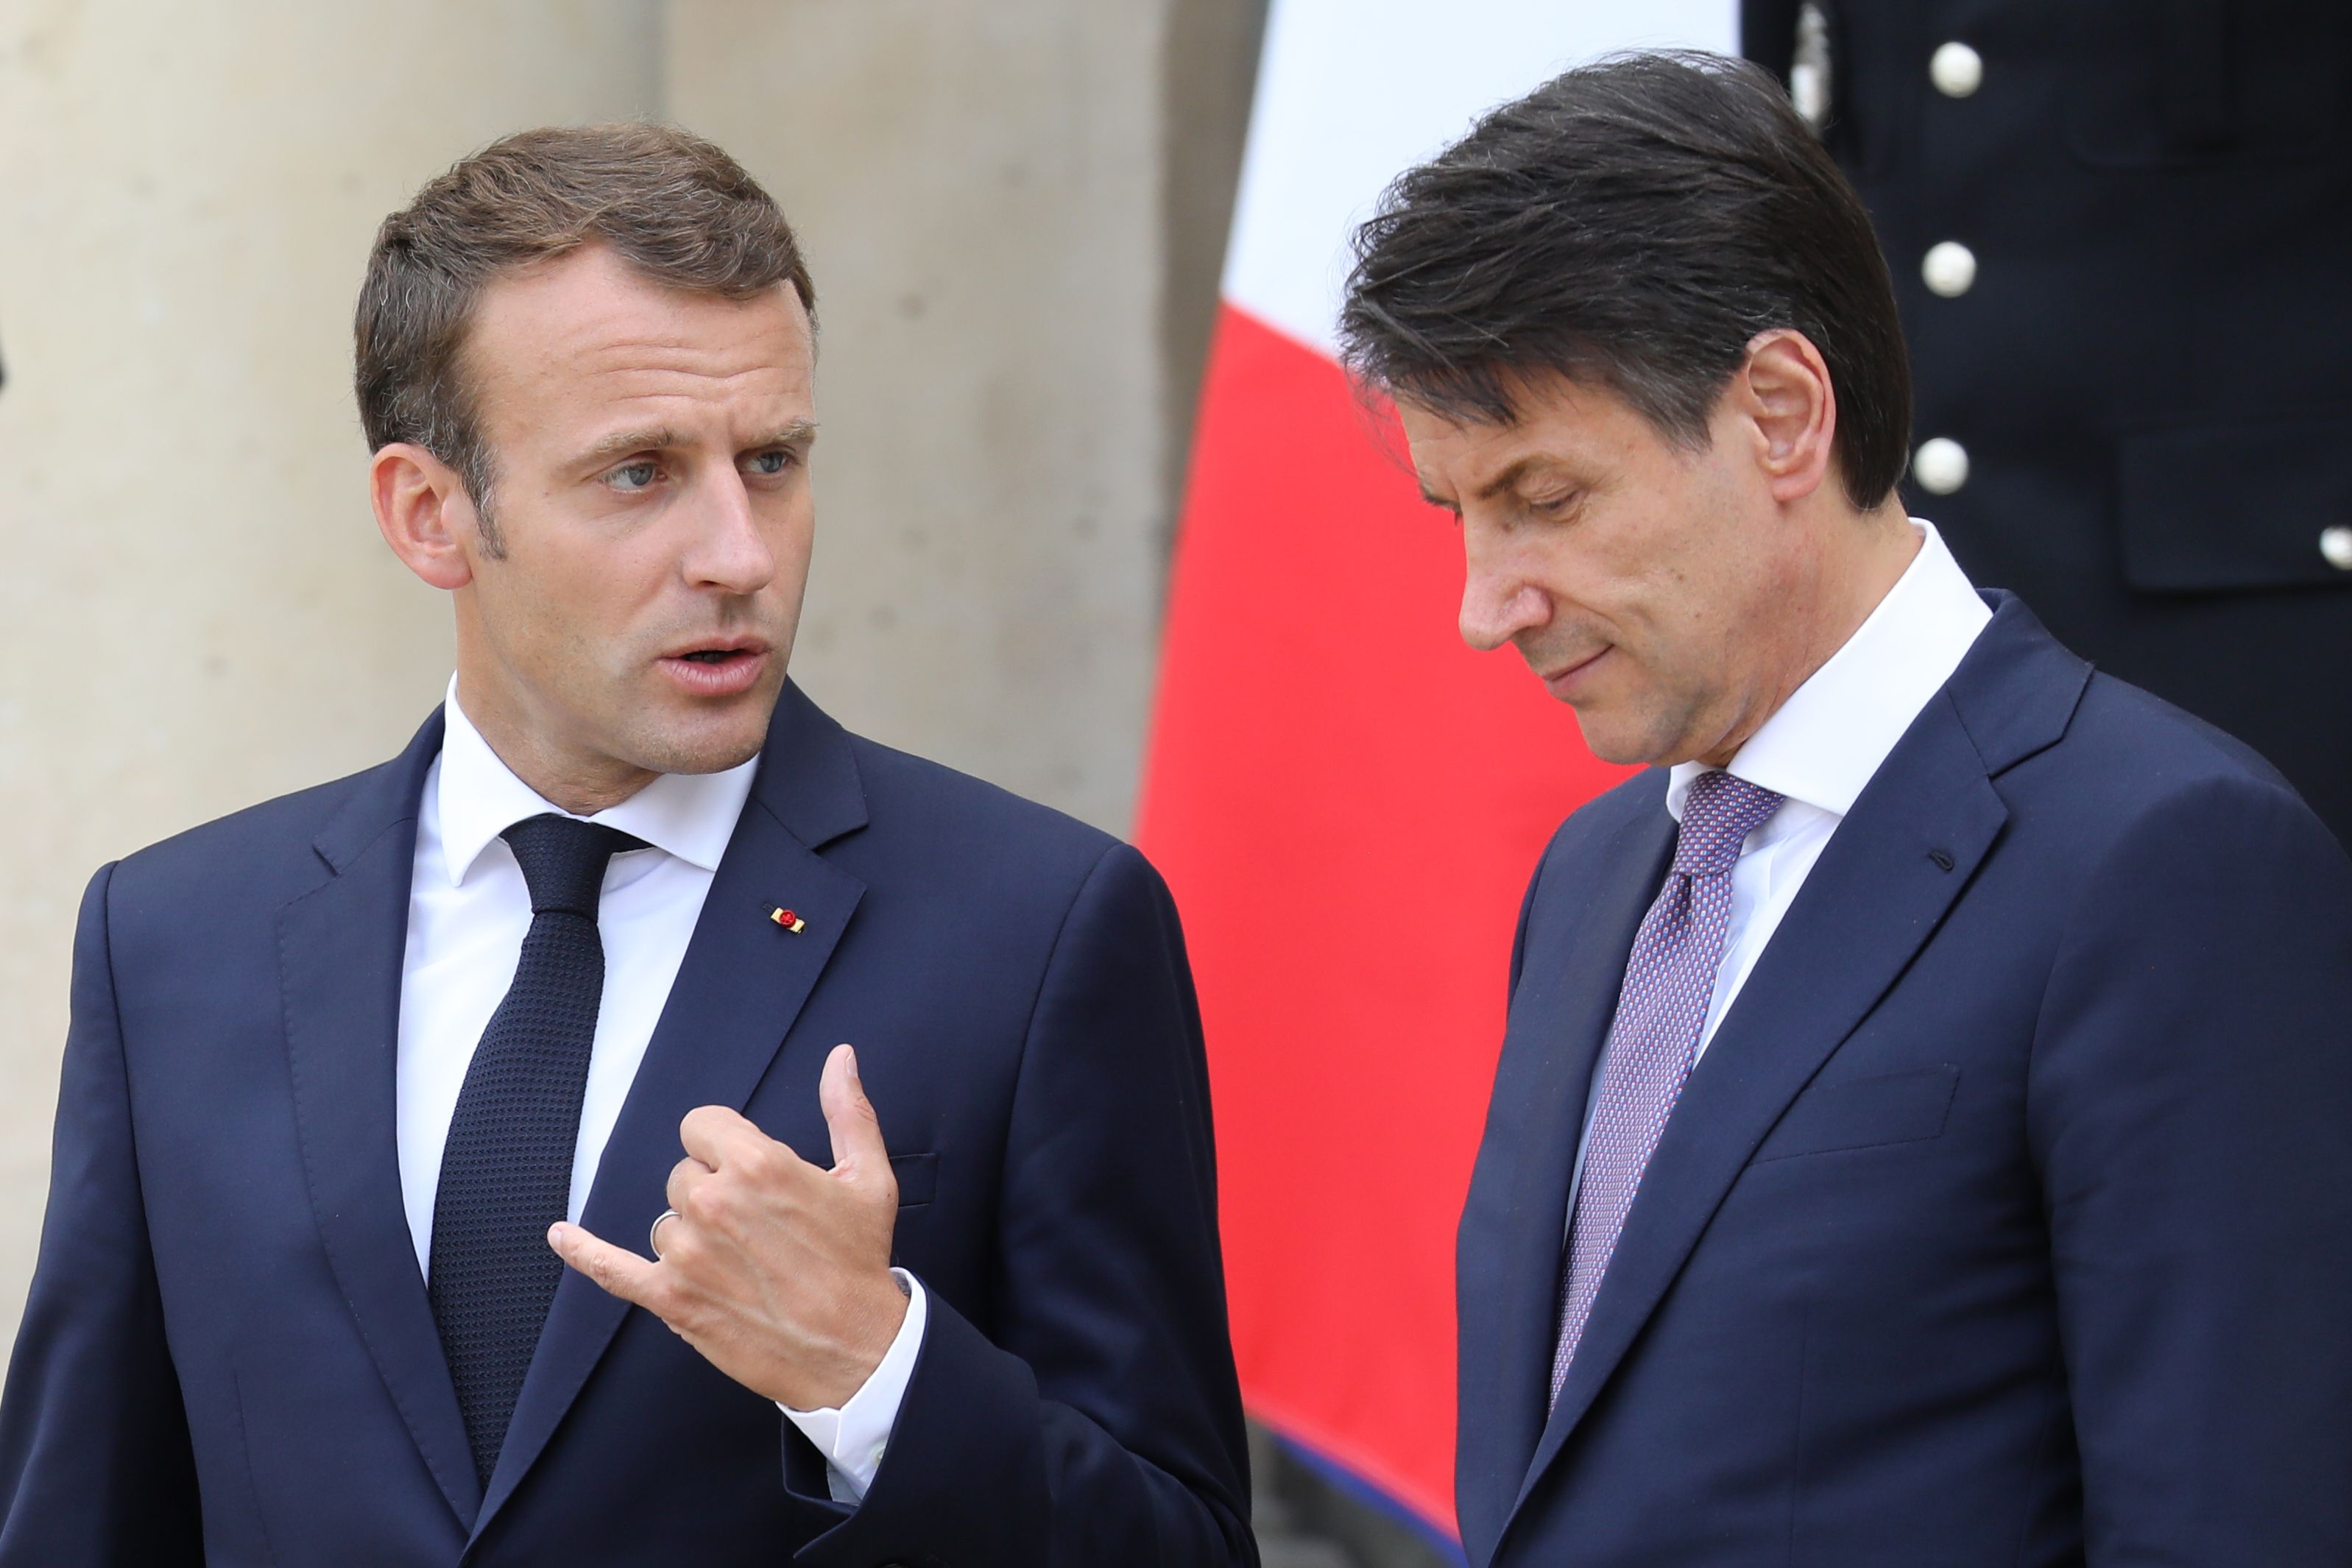 الرئيس الفرنسي ورئيس الوزراء الإيطالي